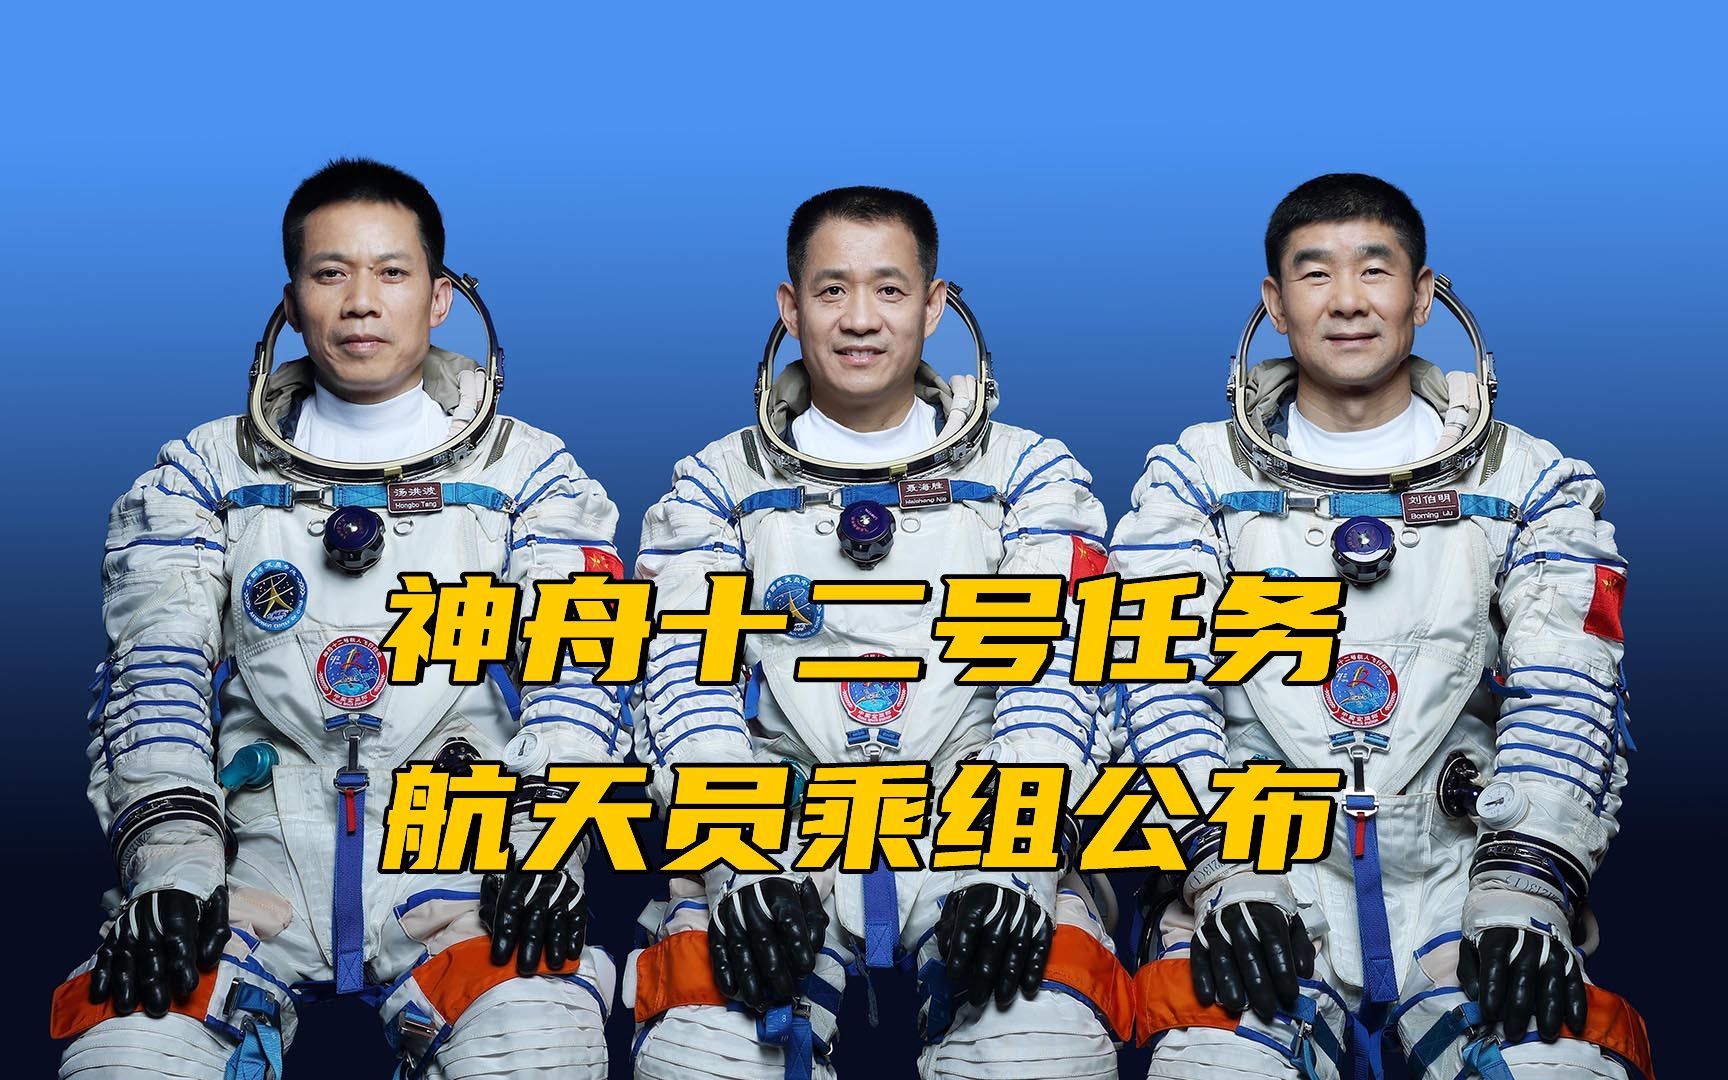 神舟十二号任务航天员乘组公布:聂海胜,刘伯明,汤洪波